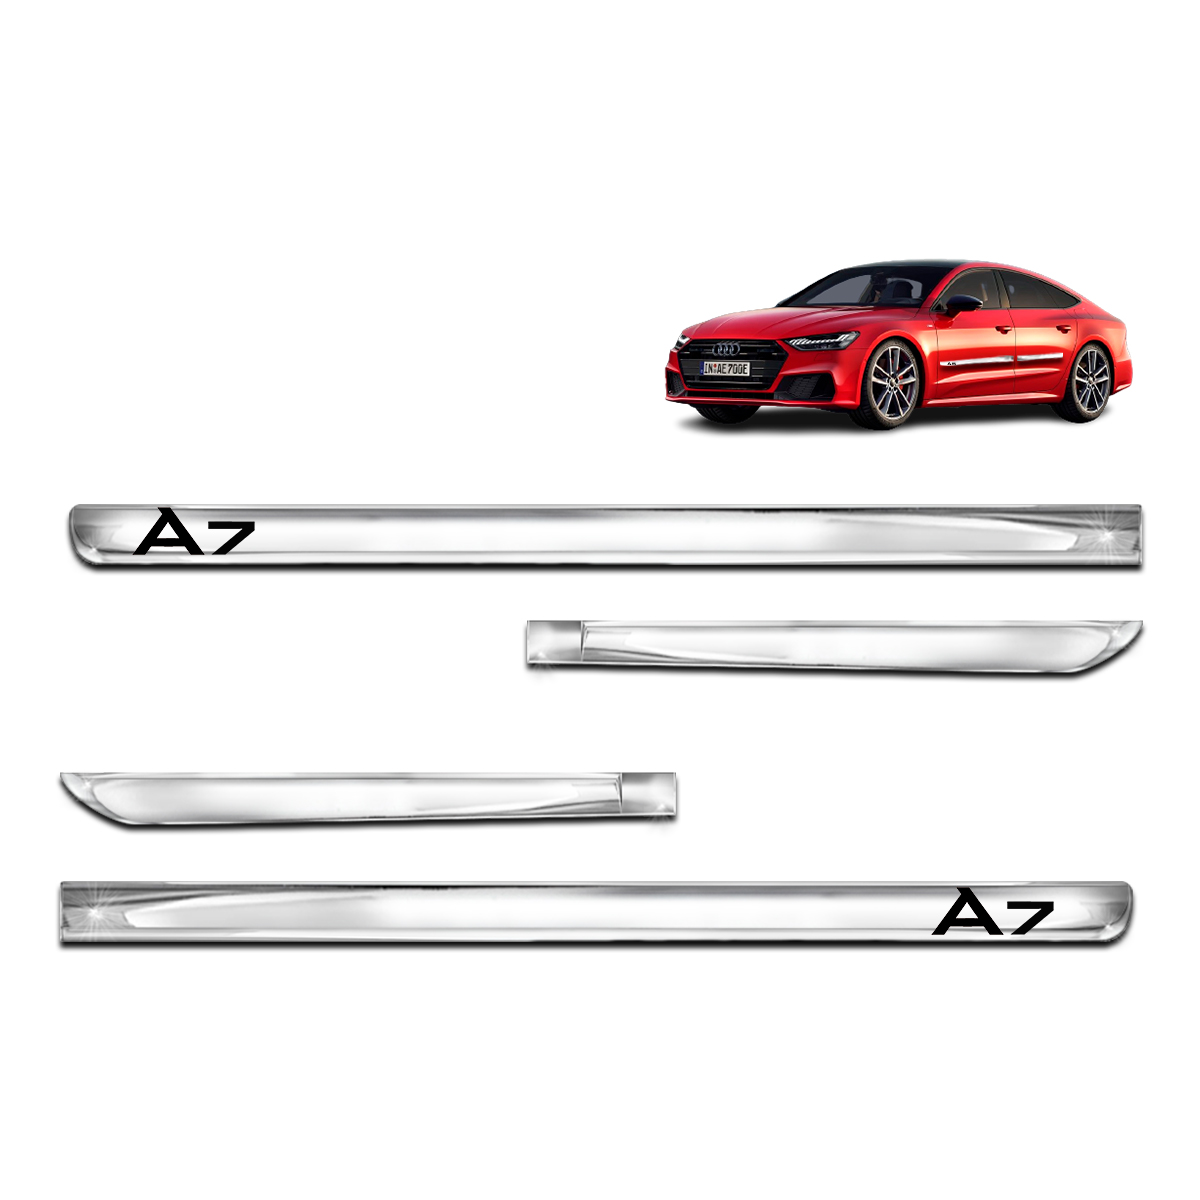 Kit X-treme de Friso Cromado Lateral Audi A7 4 Portas